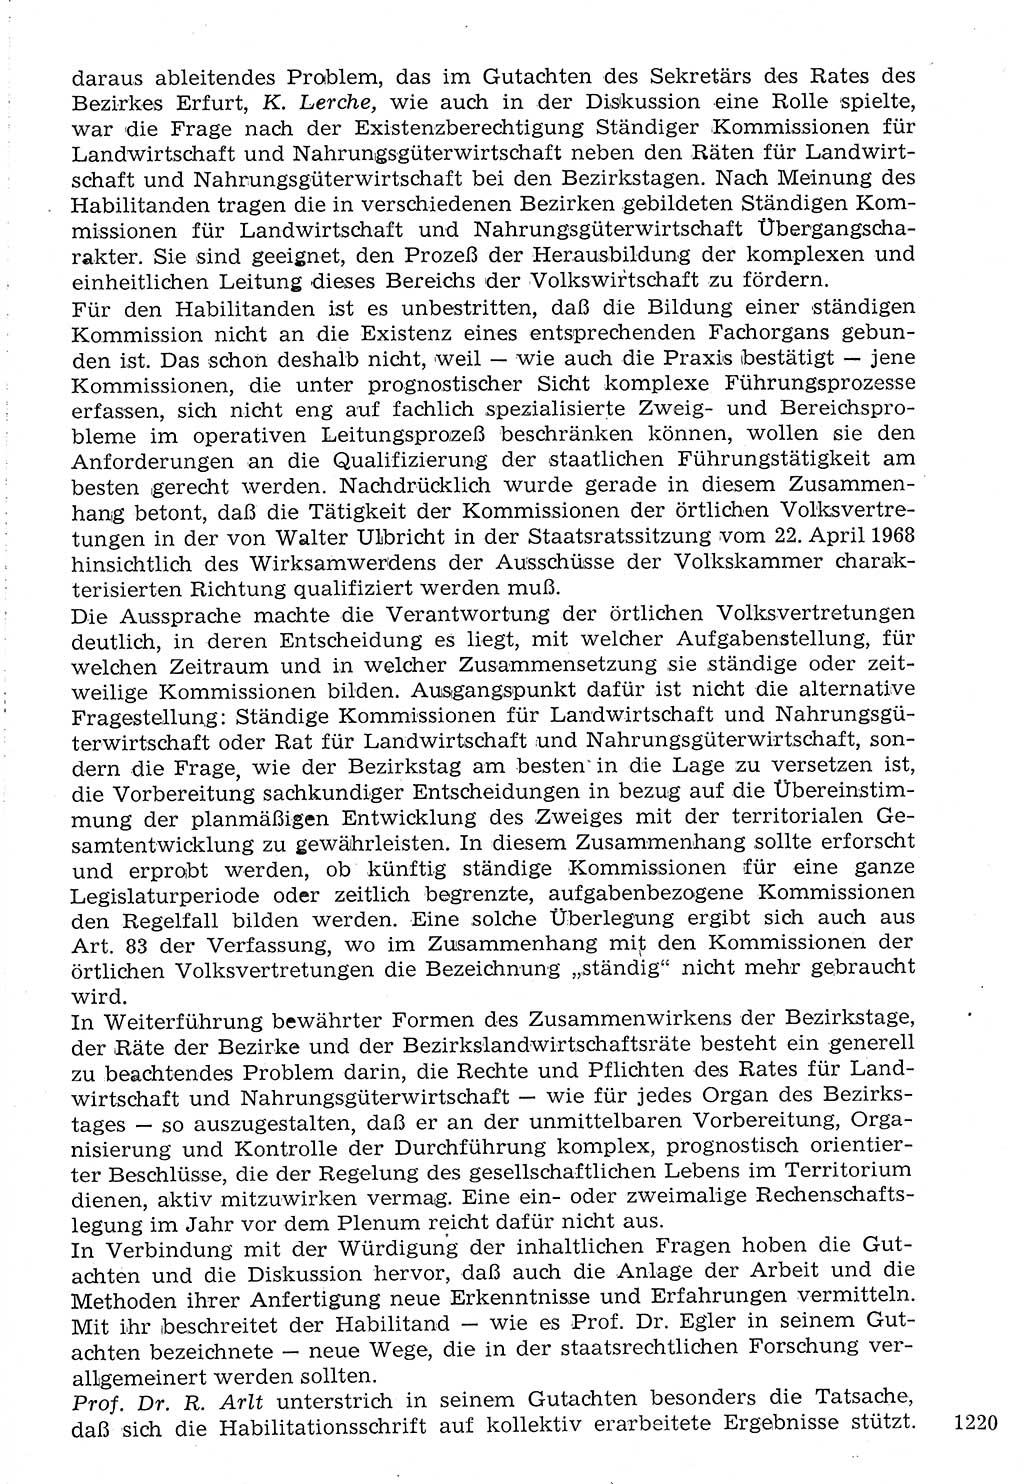 Staat und Recht (StuR), 17. Jahrgang [Deutsche Demokratische Republik (DDR)] 1968, Seite 1220 (StuR DDR 1968, S. 1220)